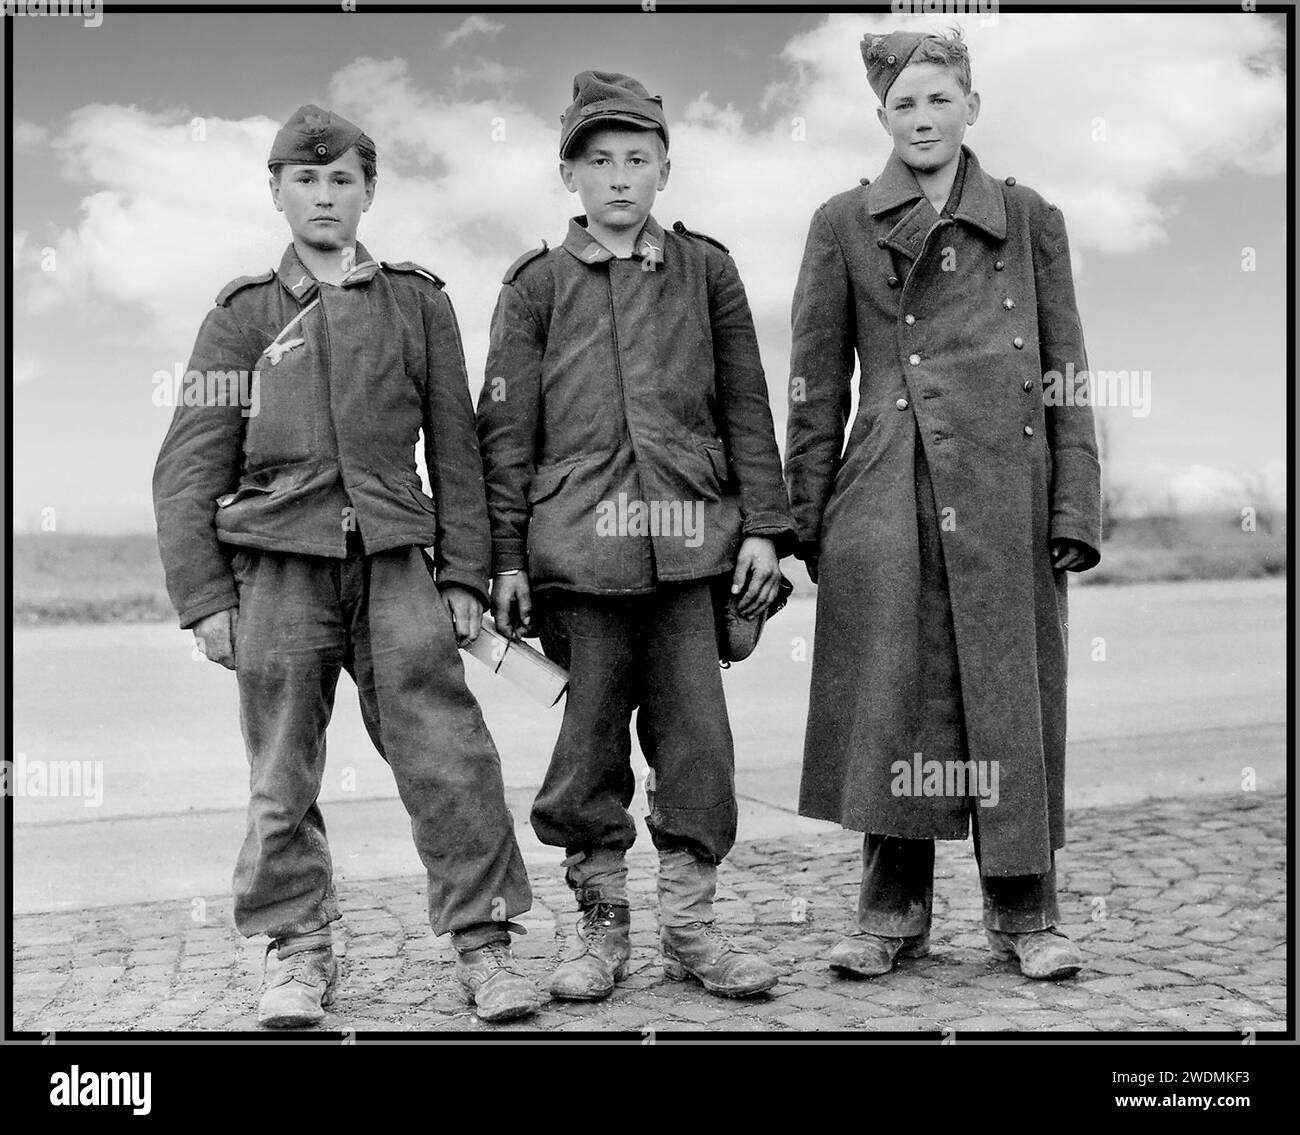 ESERCITO GIOVANILE di HITLER adolescenti tedeschi di quattordici anni, soldati della Gioventù Hitler Jugend Hitler, catturati dalle unità dell'esercito americano nell'aprile 1945. Berstadt, provincia di Assia, Germania Data: Aprile 1945 Foto Stock